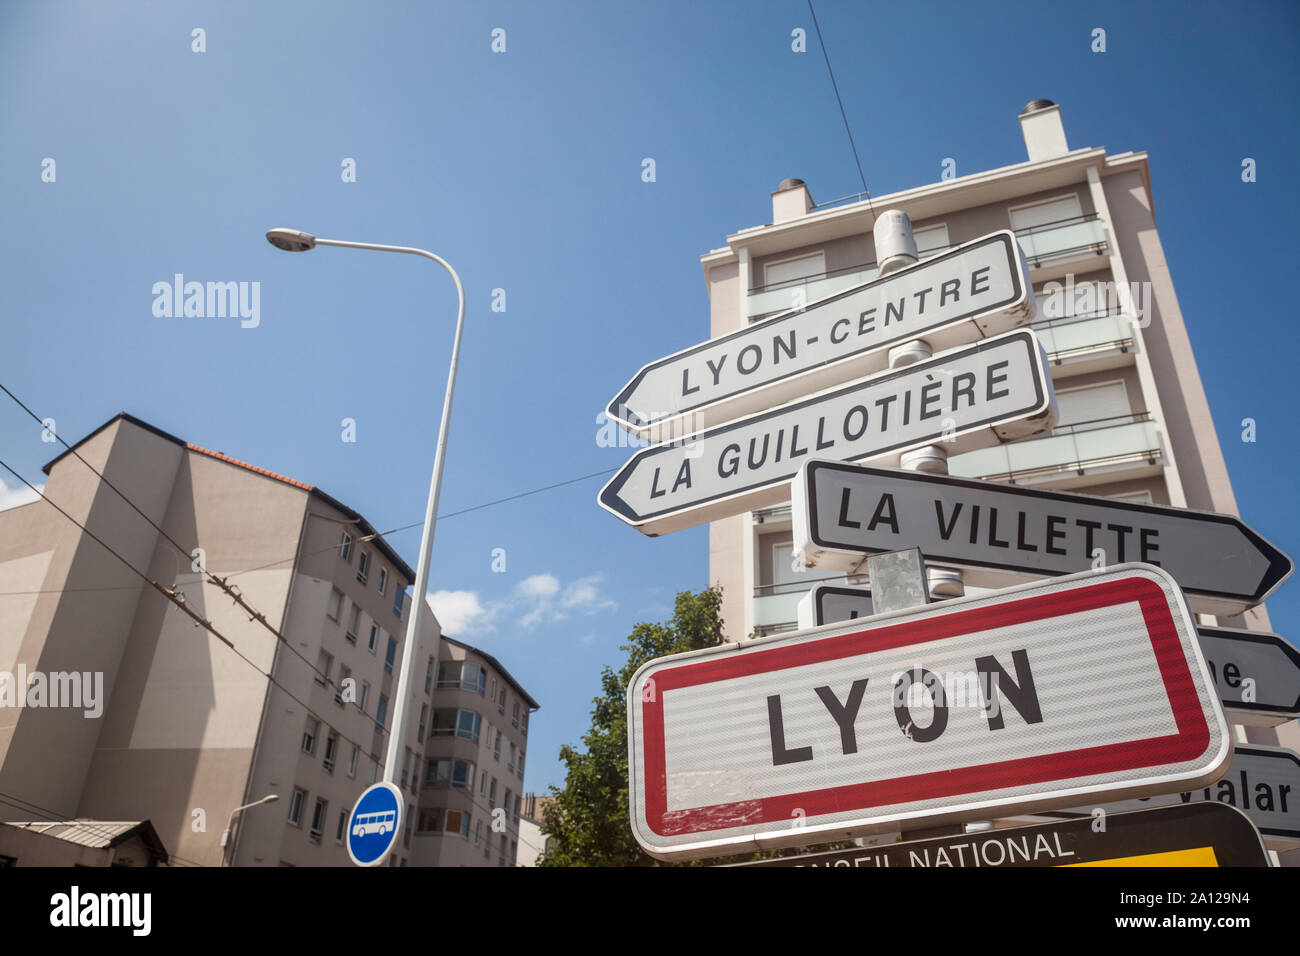 Lione, Francia - 15 luglio 2019: cartello stradale che indica l'entrata a Lione. Questo segno è un Francese standard targhetta visibile a ogni entrata a qualsiasi municipa Foto Stock